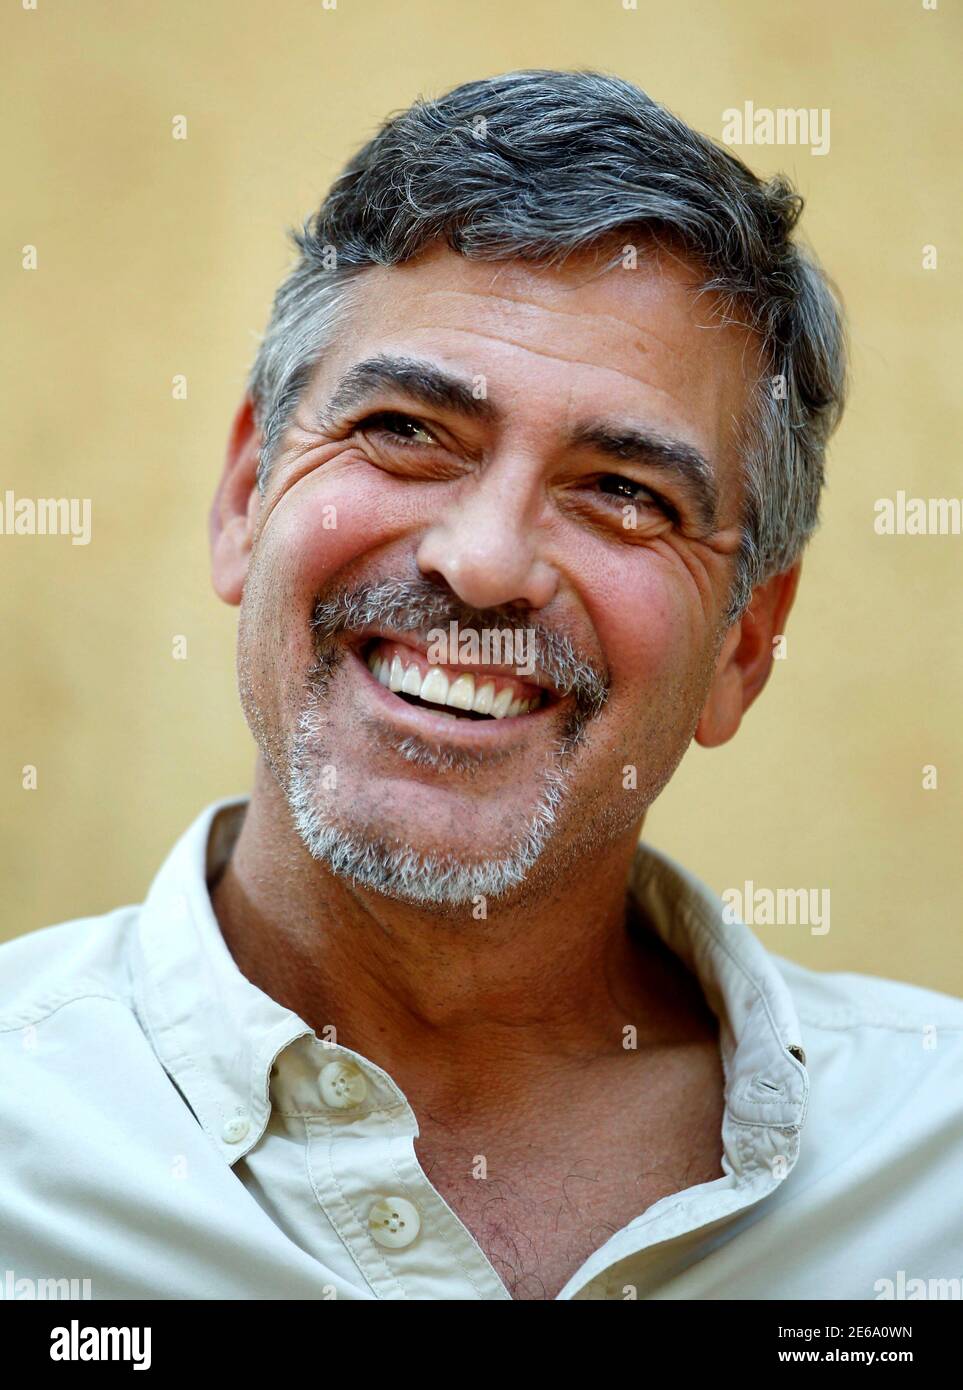 Der Schauspieler George Clooney lächelt während eines Interviews mit Reuters in der südsudanesischen Hauptstadt Juba, 8. Januar 2011. REUTERS/Thomas Mukoya (SUDAN - Tags: PROFIL UNTERHALTUNG HEADSHOT) Stockfoto